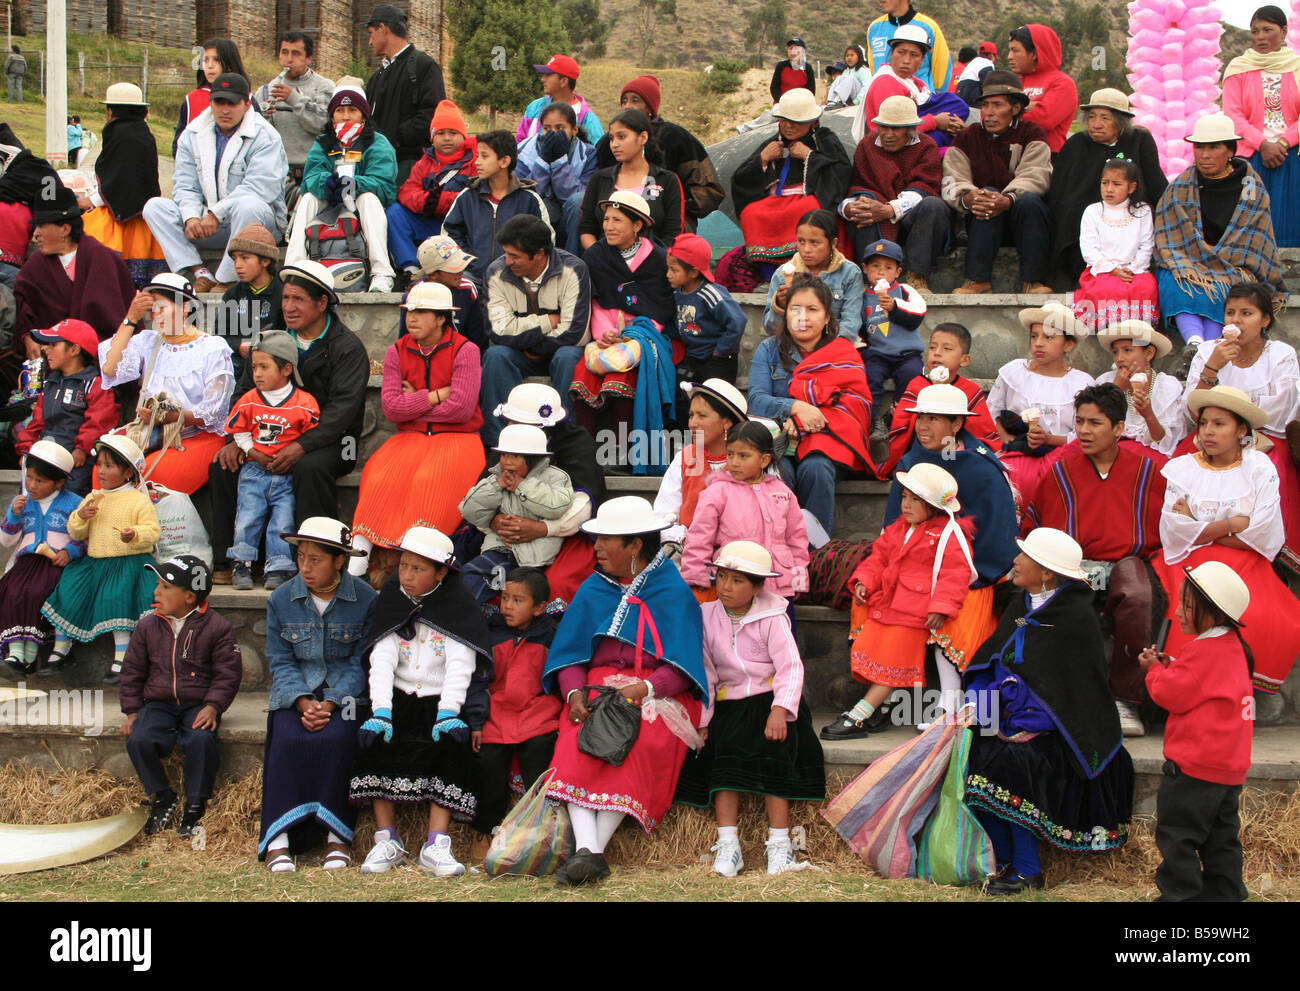 Les gens célèbrent l'Inti Raymi dédié à la Lune et Soleil Nature, une célébration d'été traditionnels, Canar,Equateur Banque D'Images